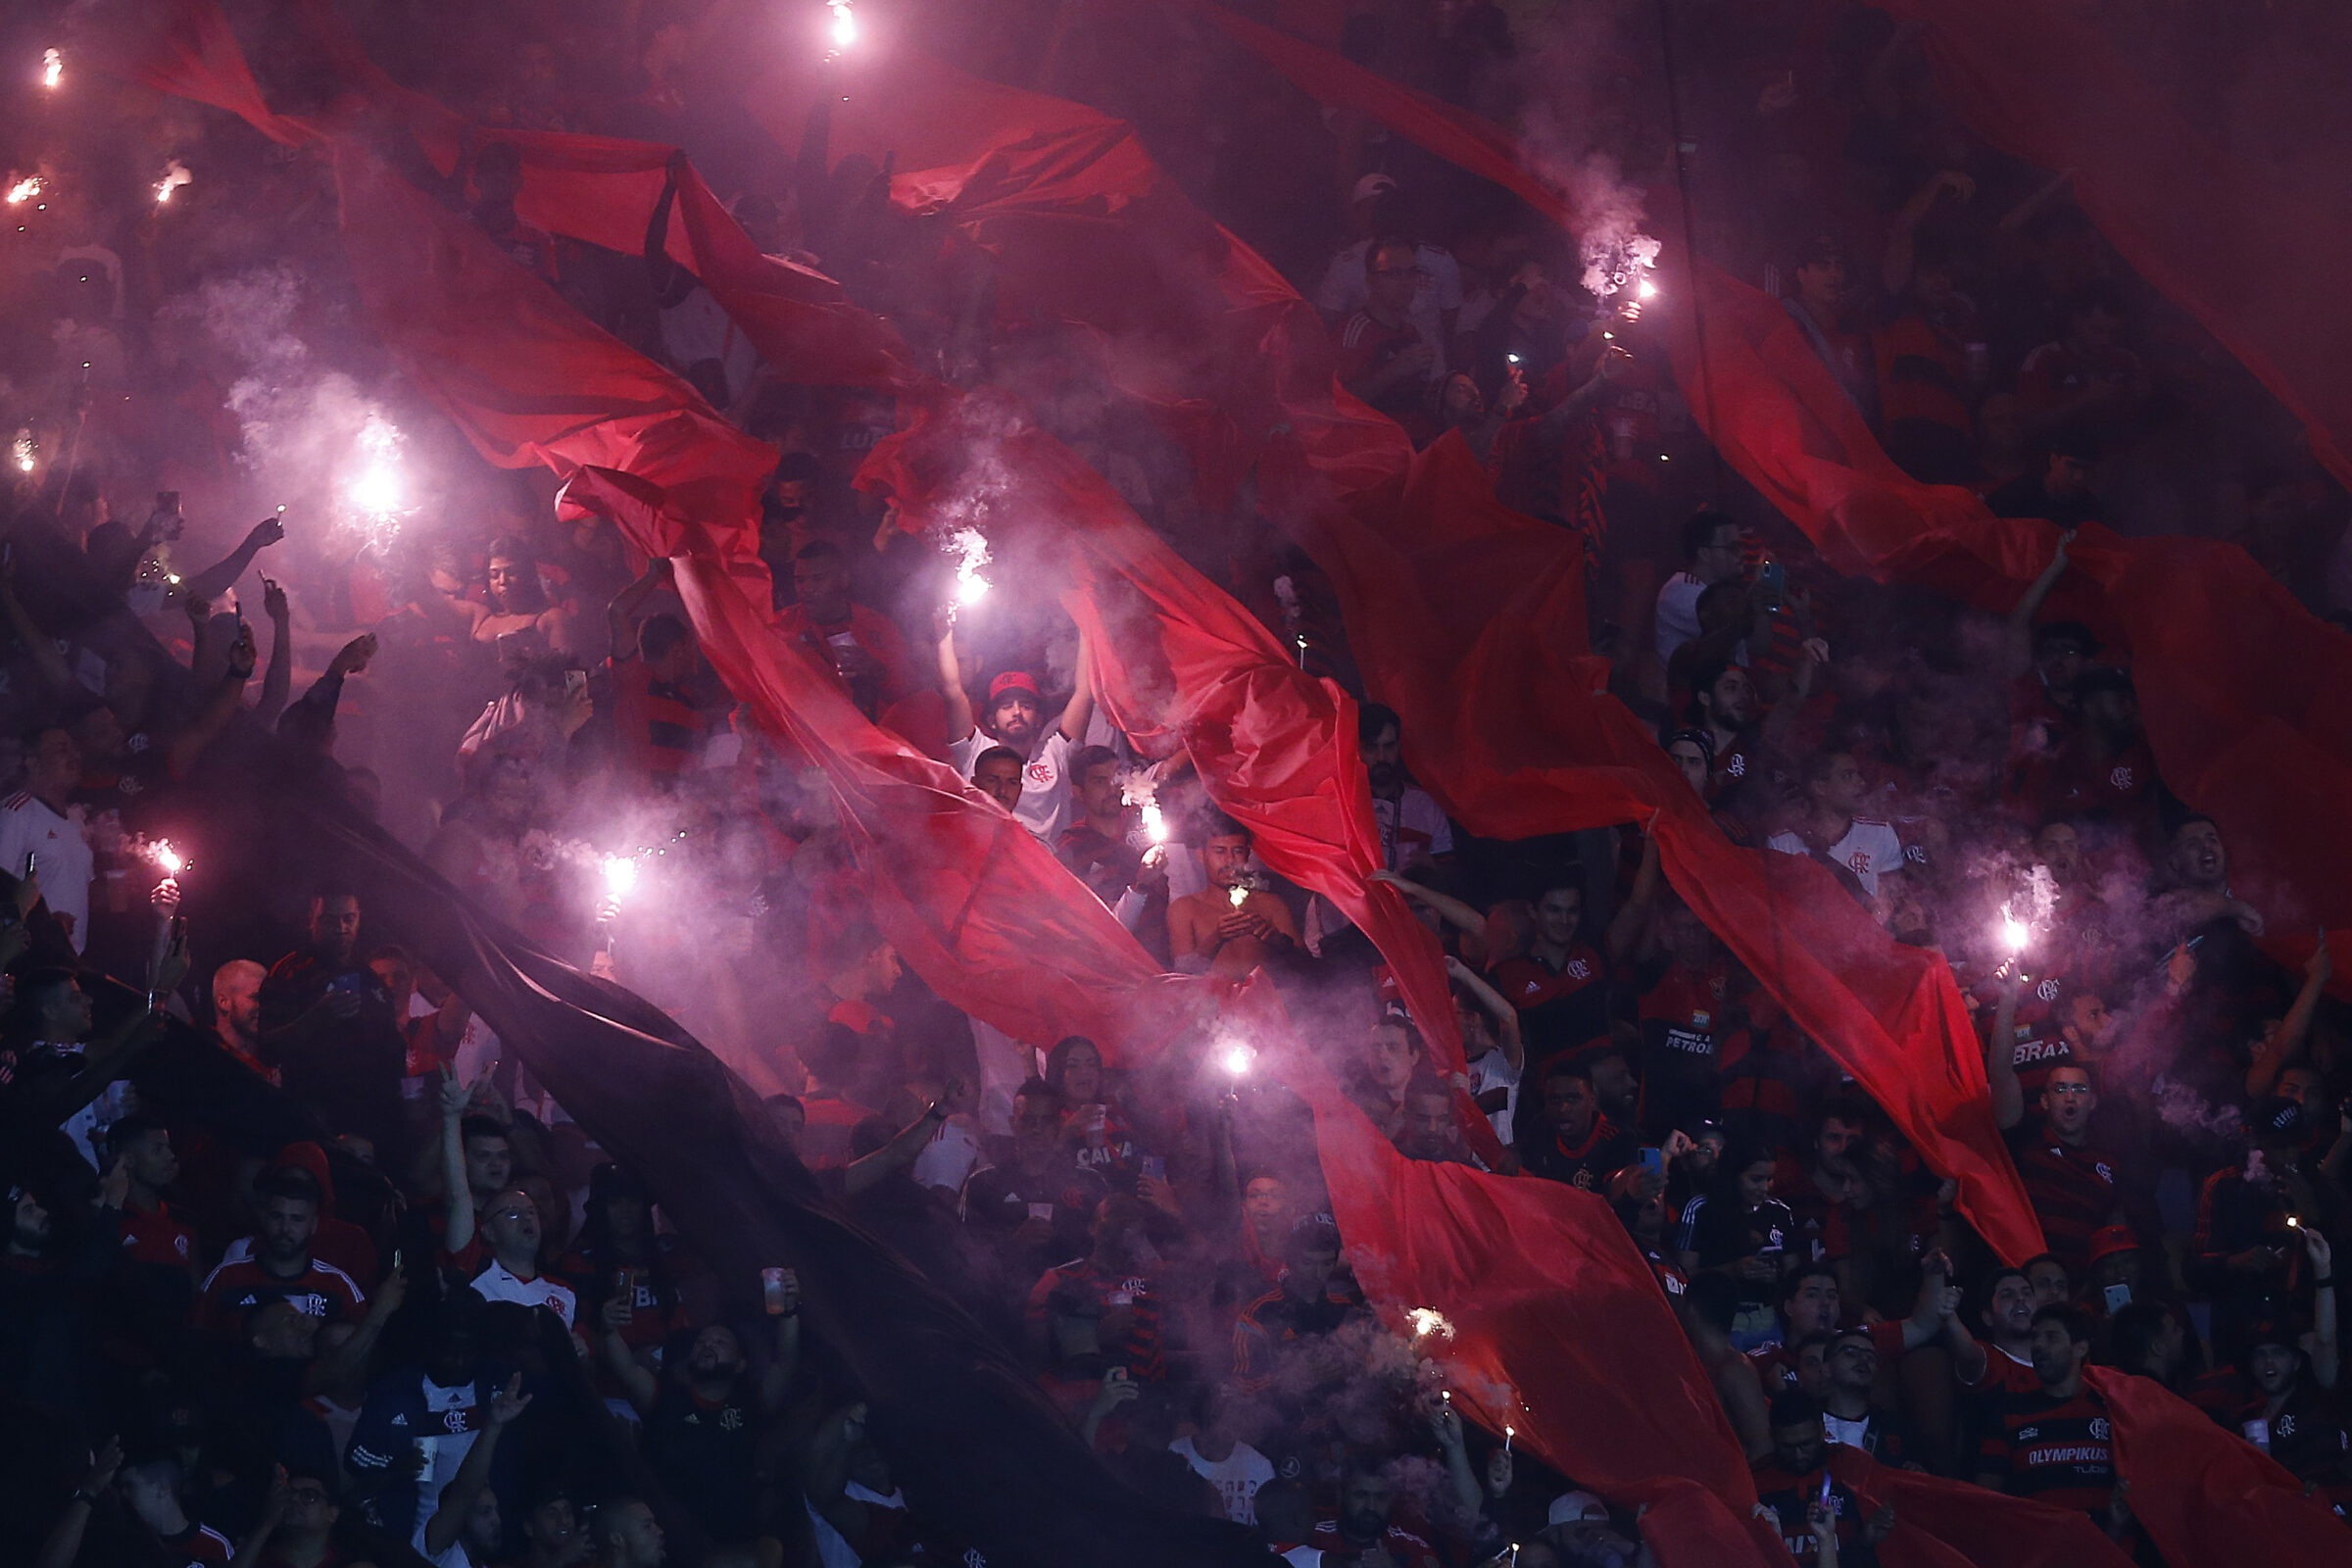 Olimpia x Flamengo: veja as escalações, desfalques e arbitragem